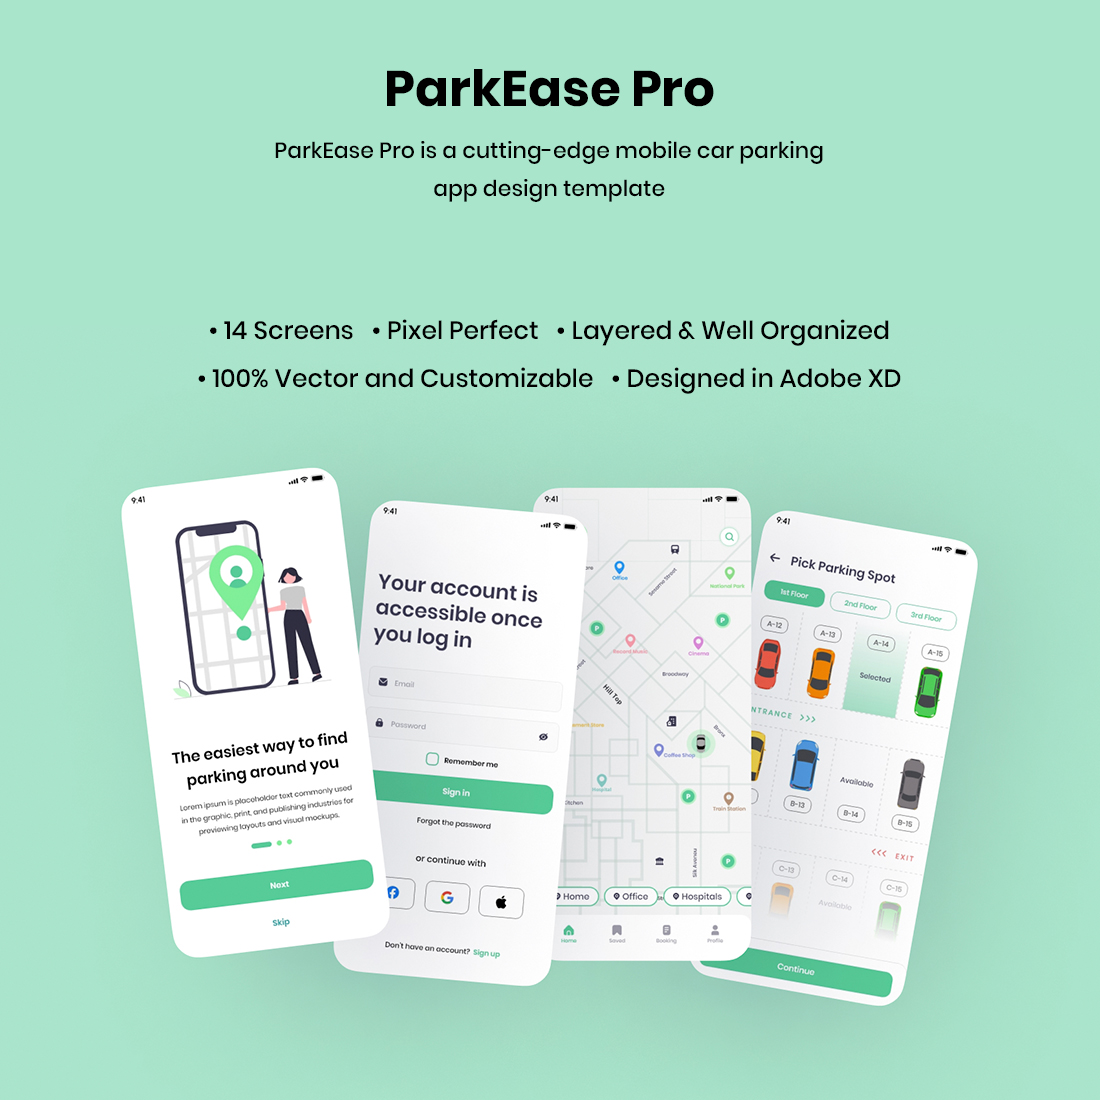 ParkEase Pro - Adobe XD Parking Finder App cover image.